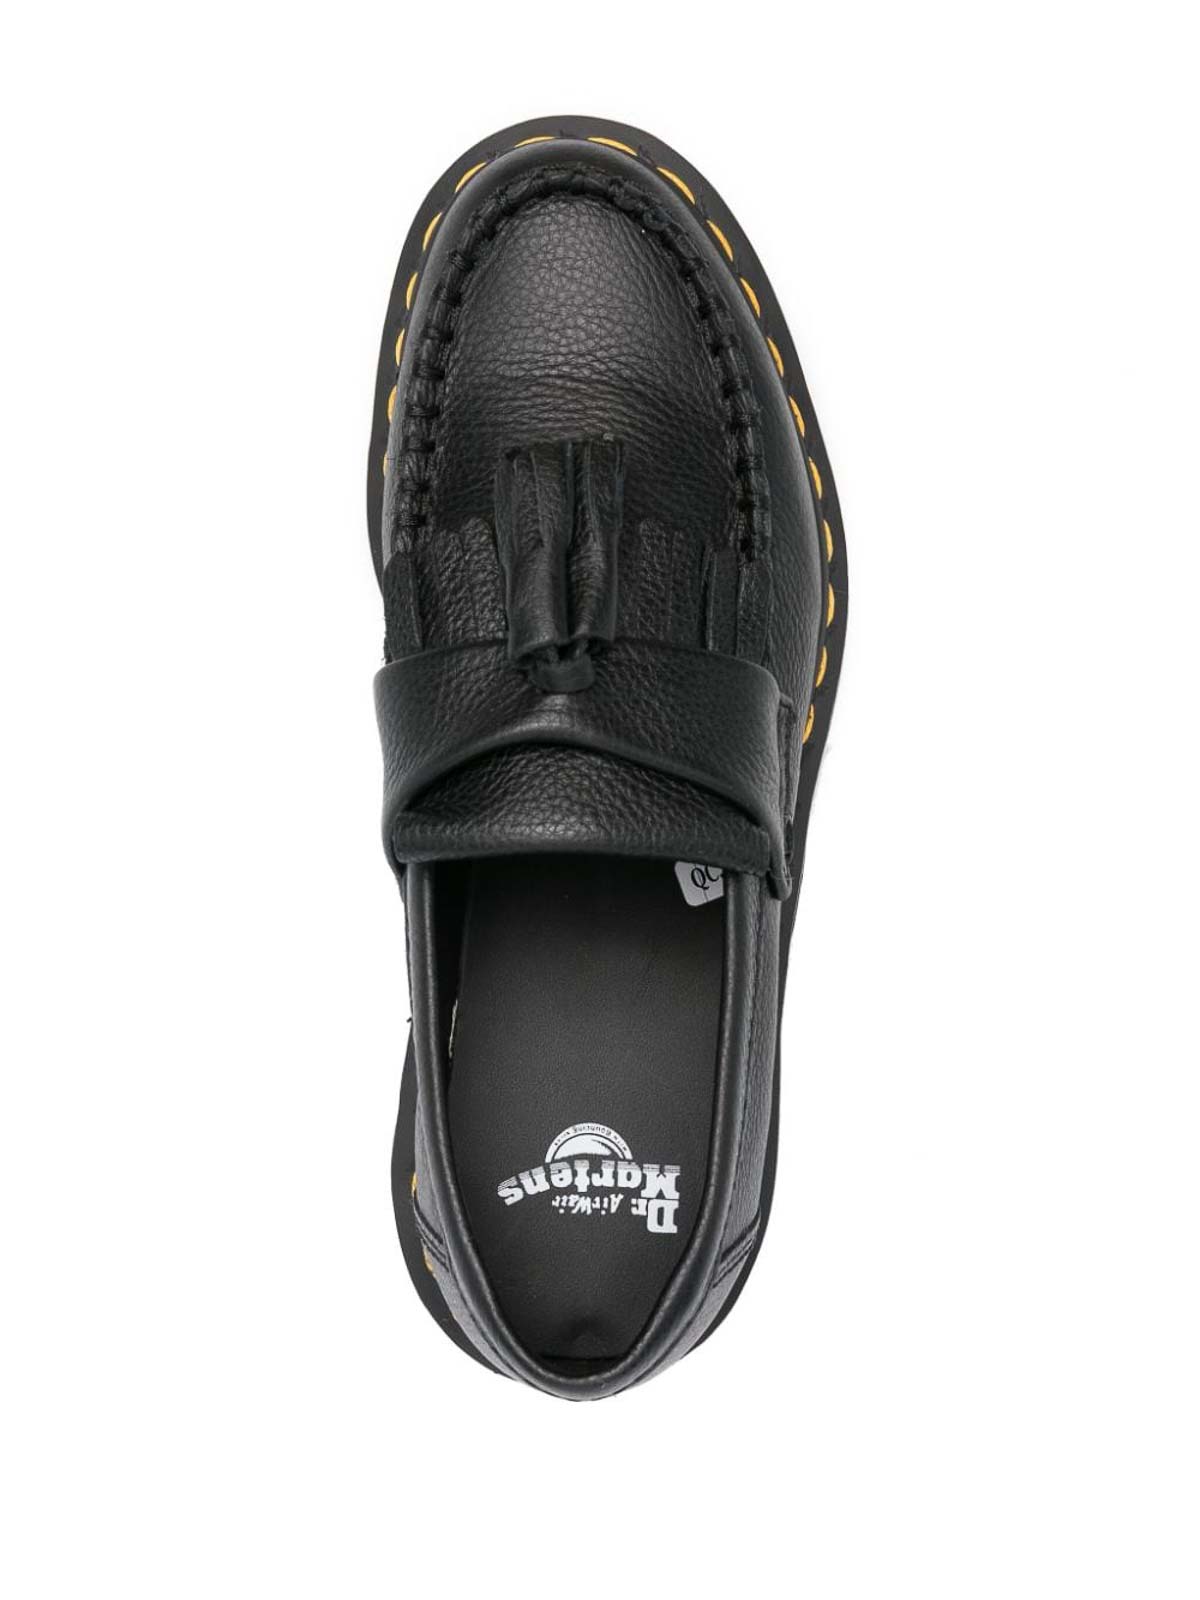 Shop Dr. Martens' Adrian Leather Loafes In Black